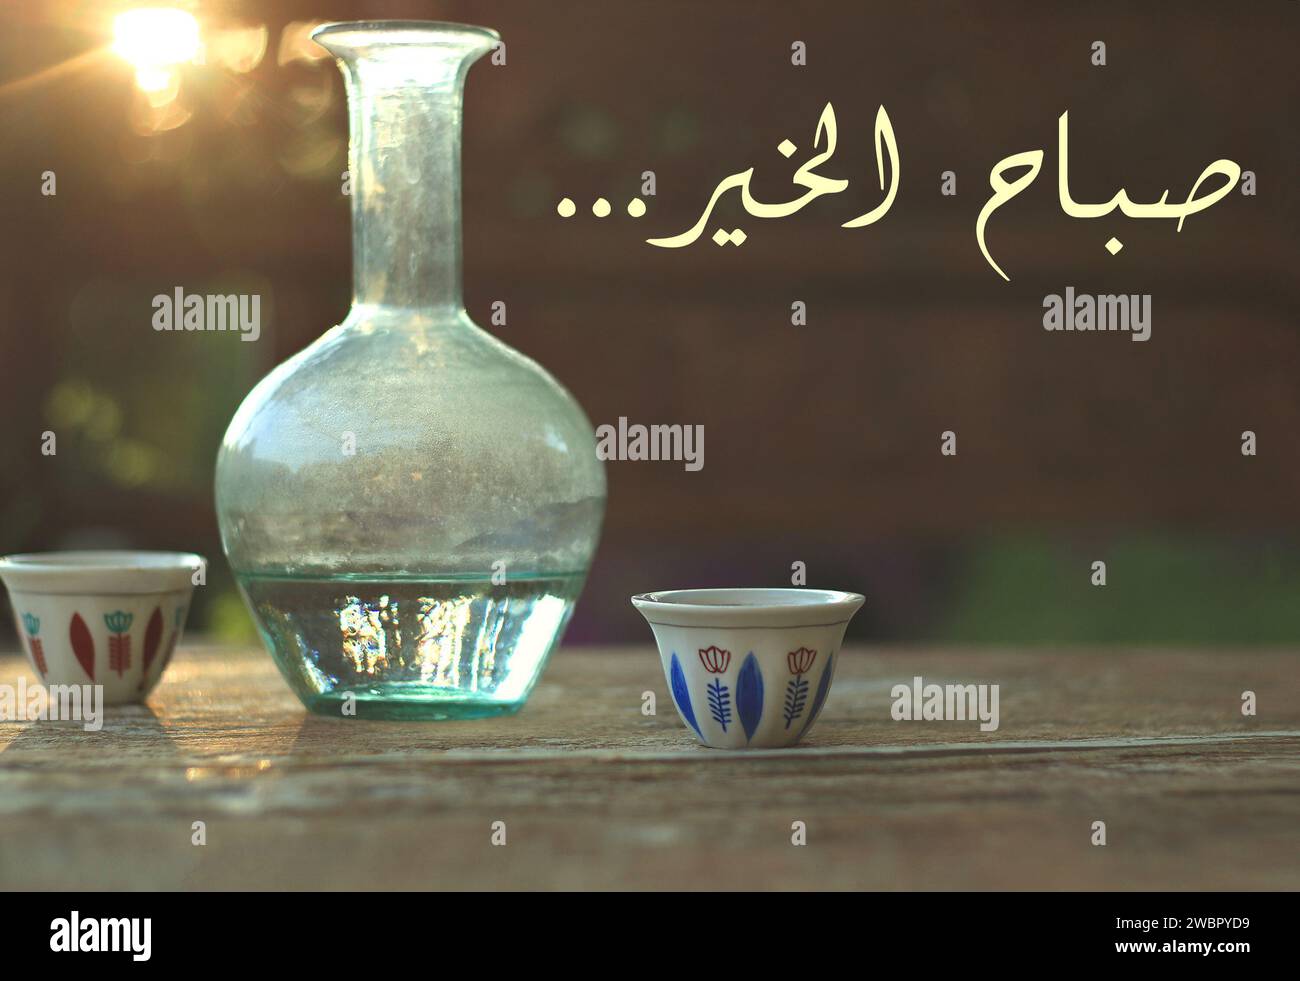 Buon giorno scritto in arabo. Due tazze di caffè tradizionali libanesi insieme a una caraffa d'acqua in vetro, ebrik. Foto Stock